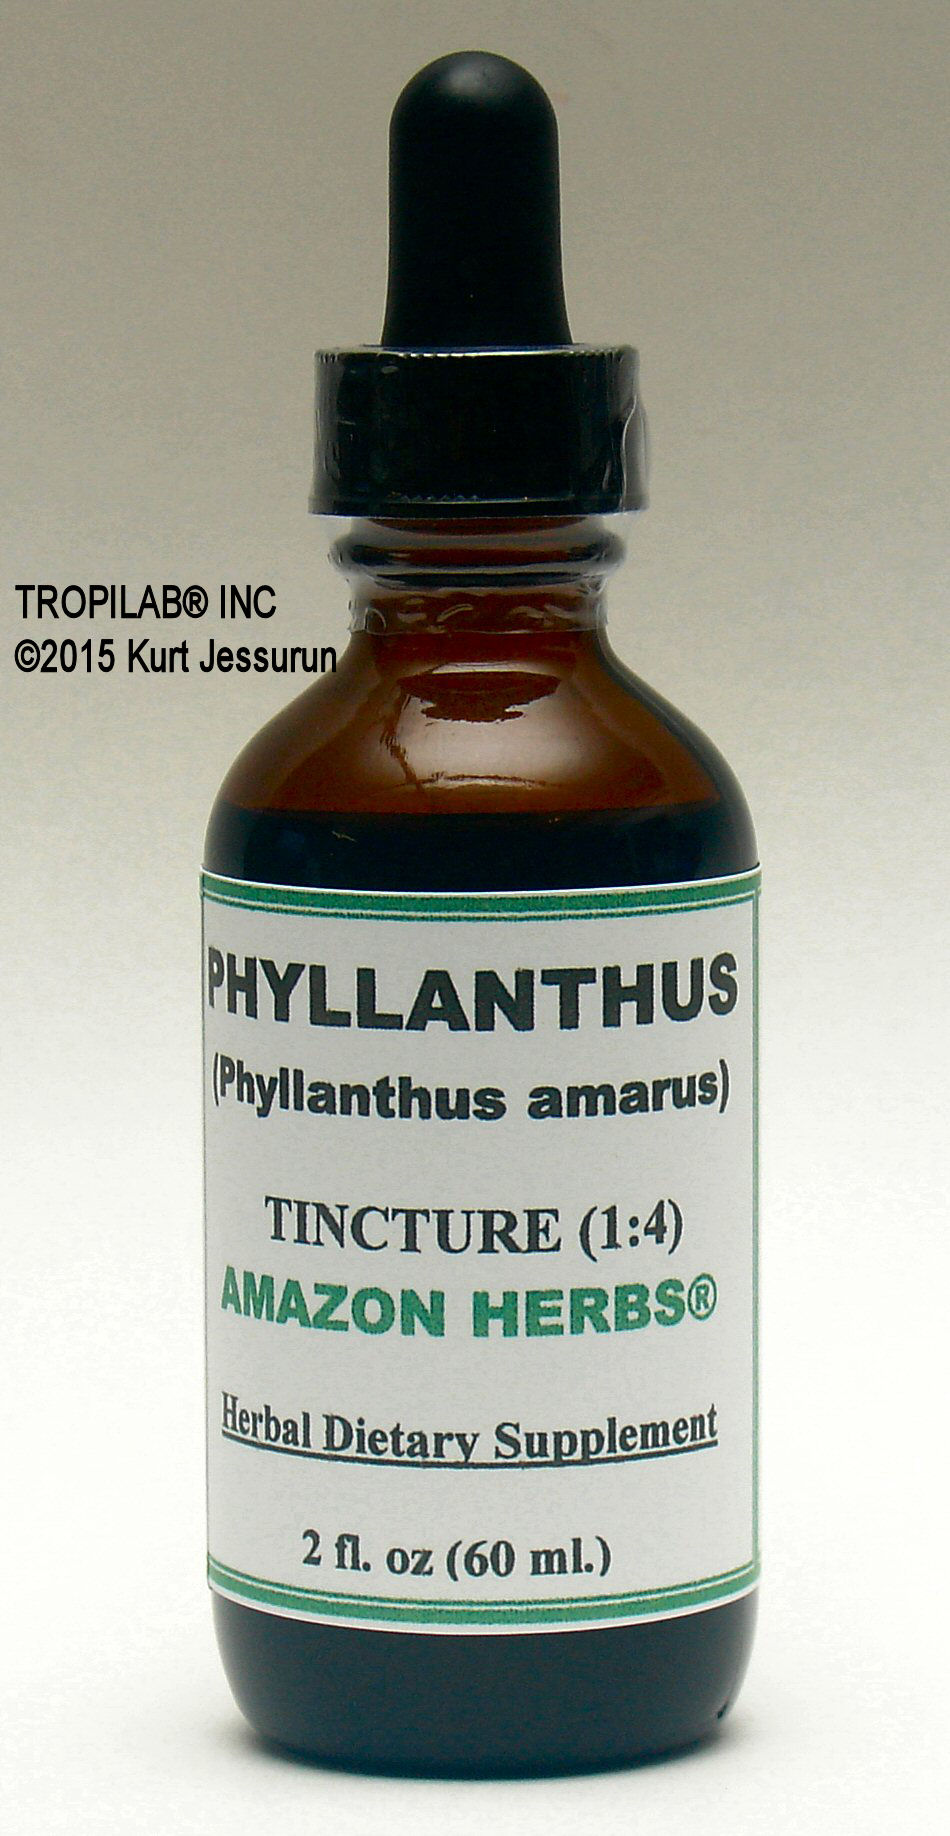 Phyllanthus amarus tincture